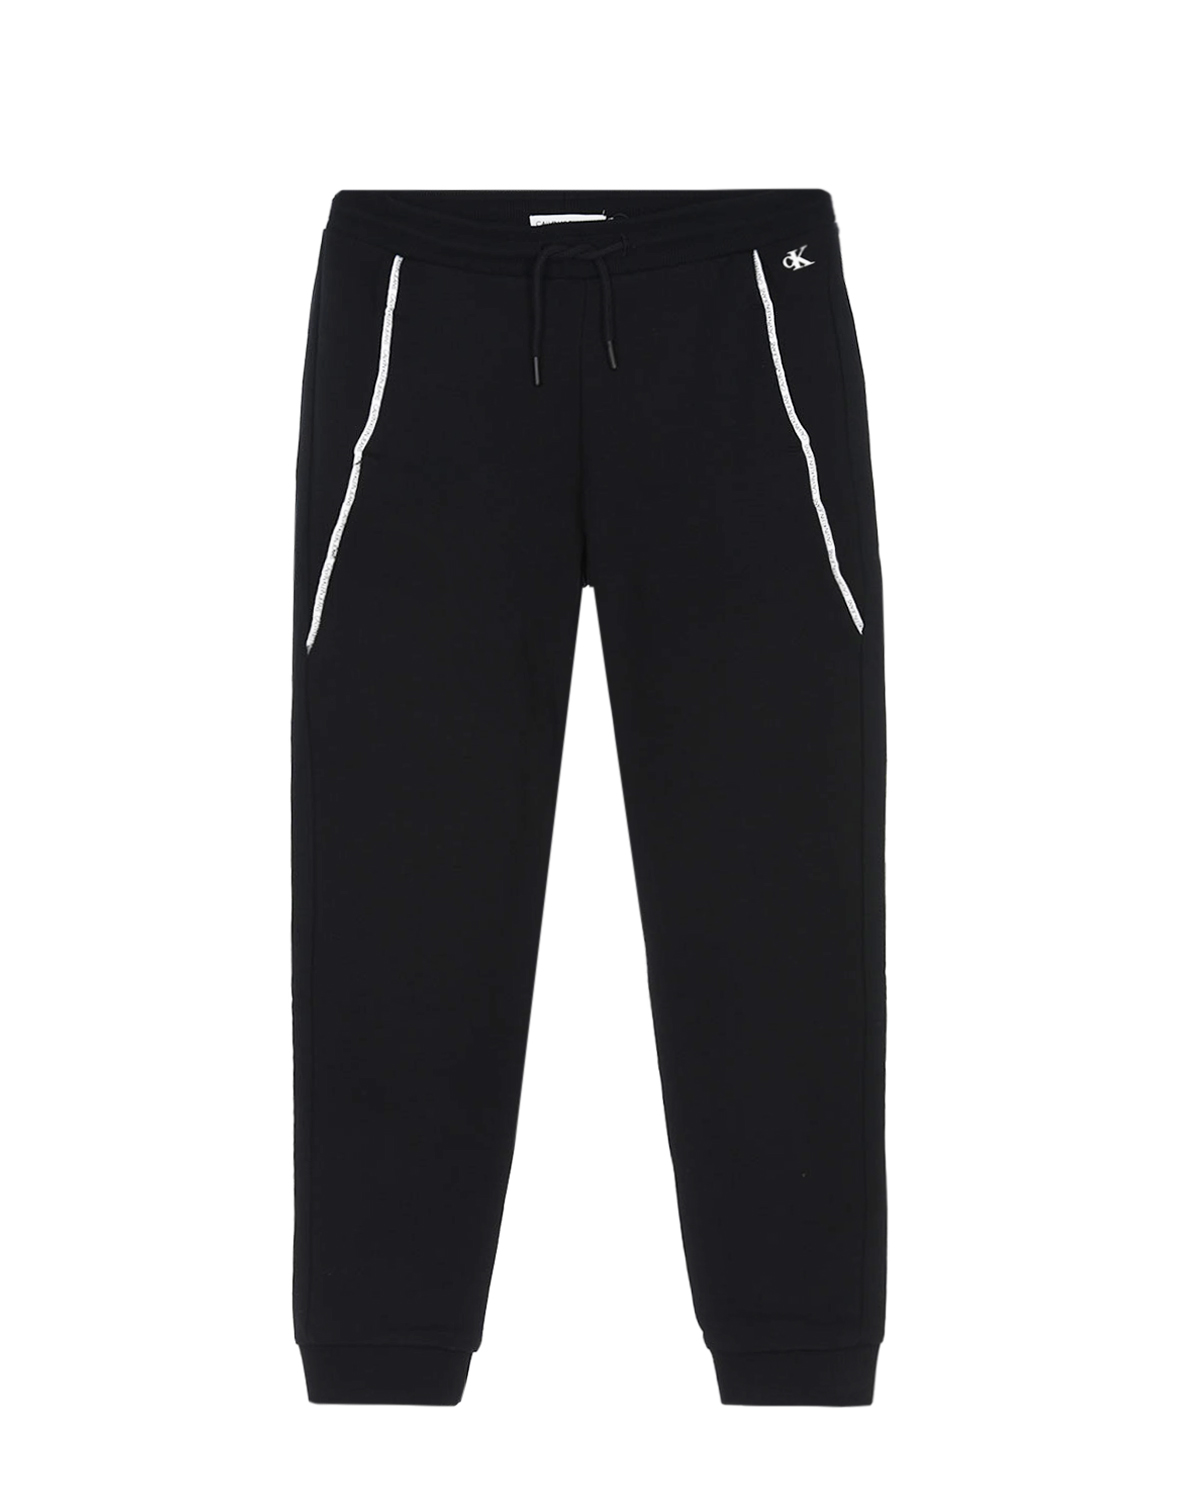 Спортивные брюки с брендированным кантом Calvin Klein детские, размер 152, цвет черный - фото 1